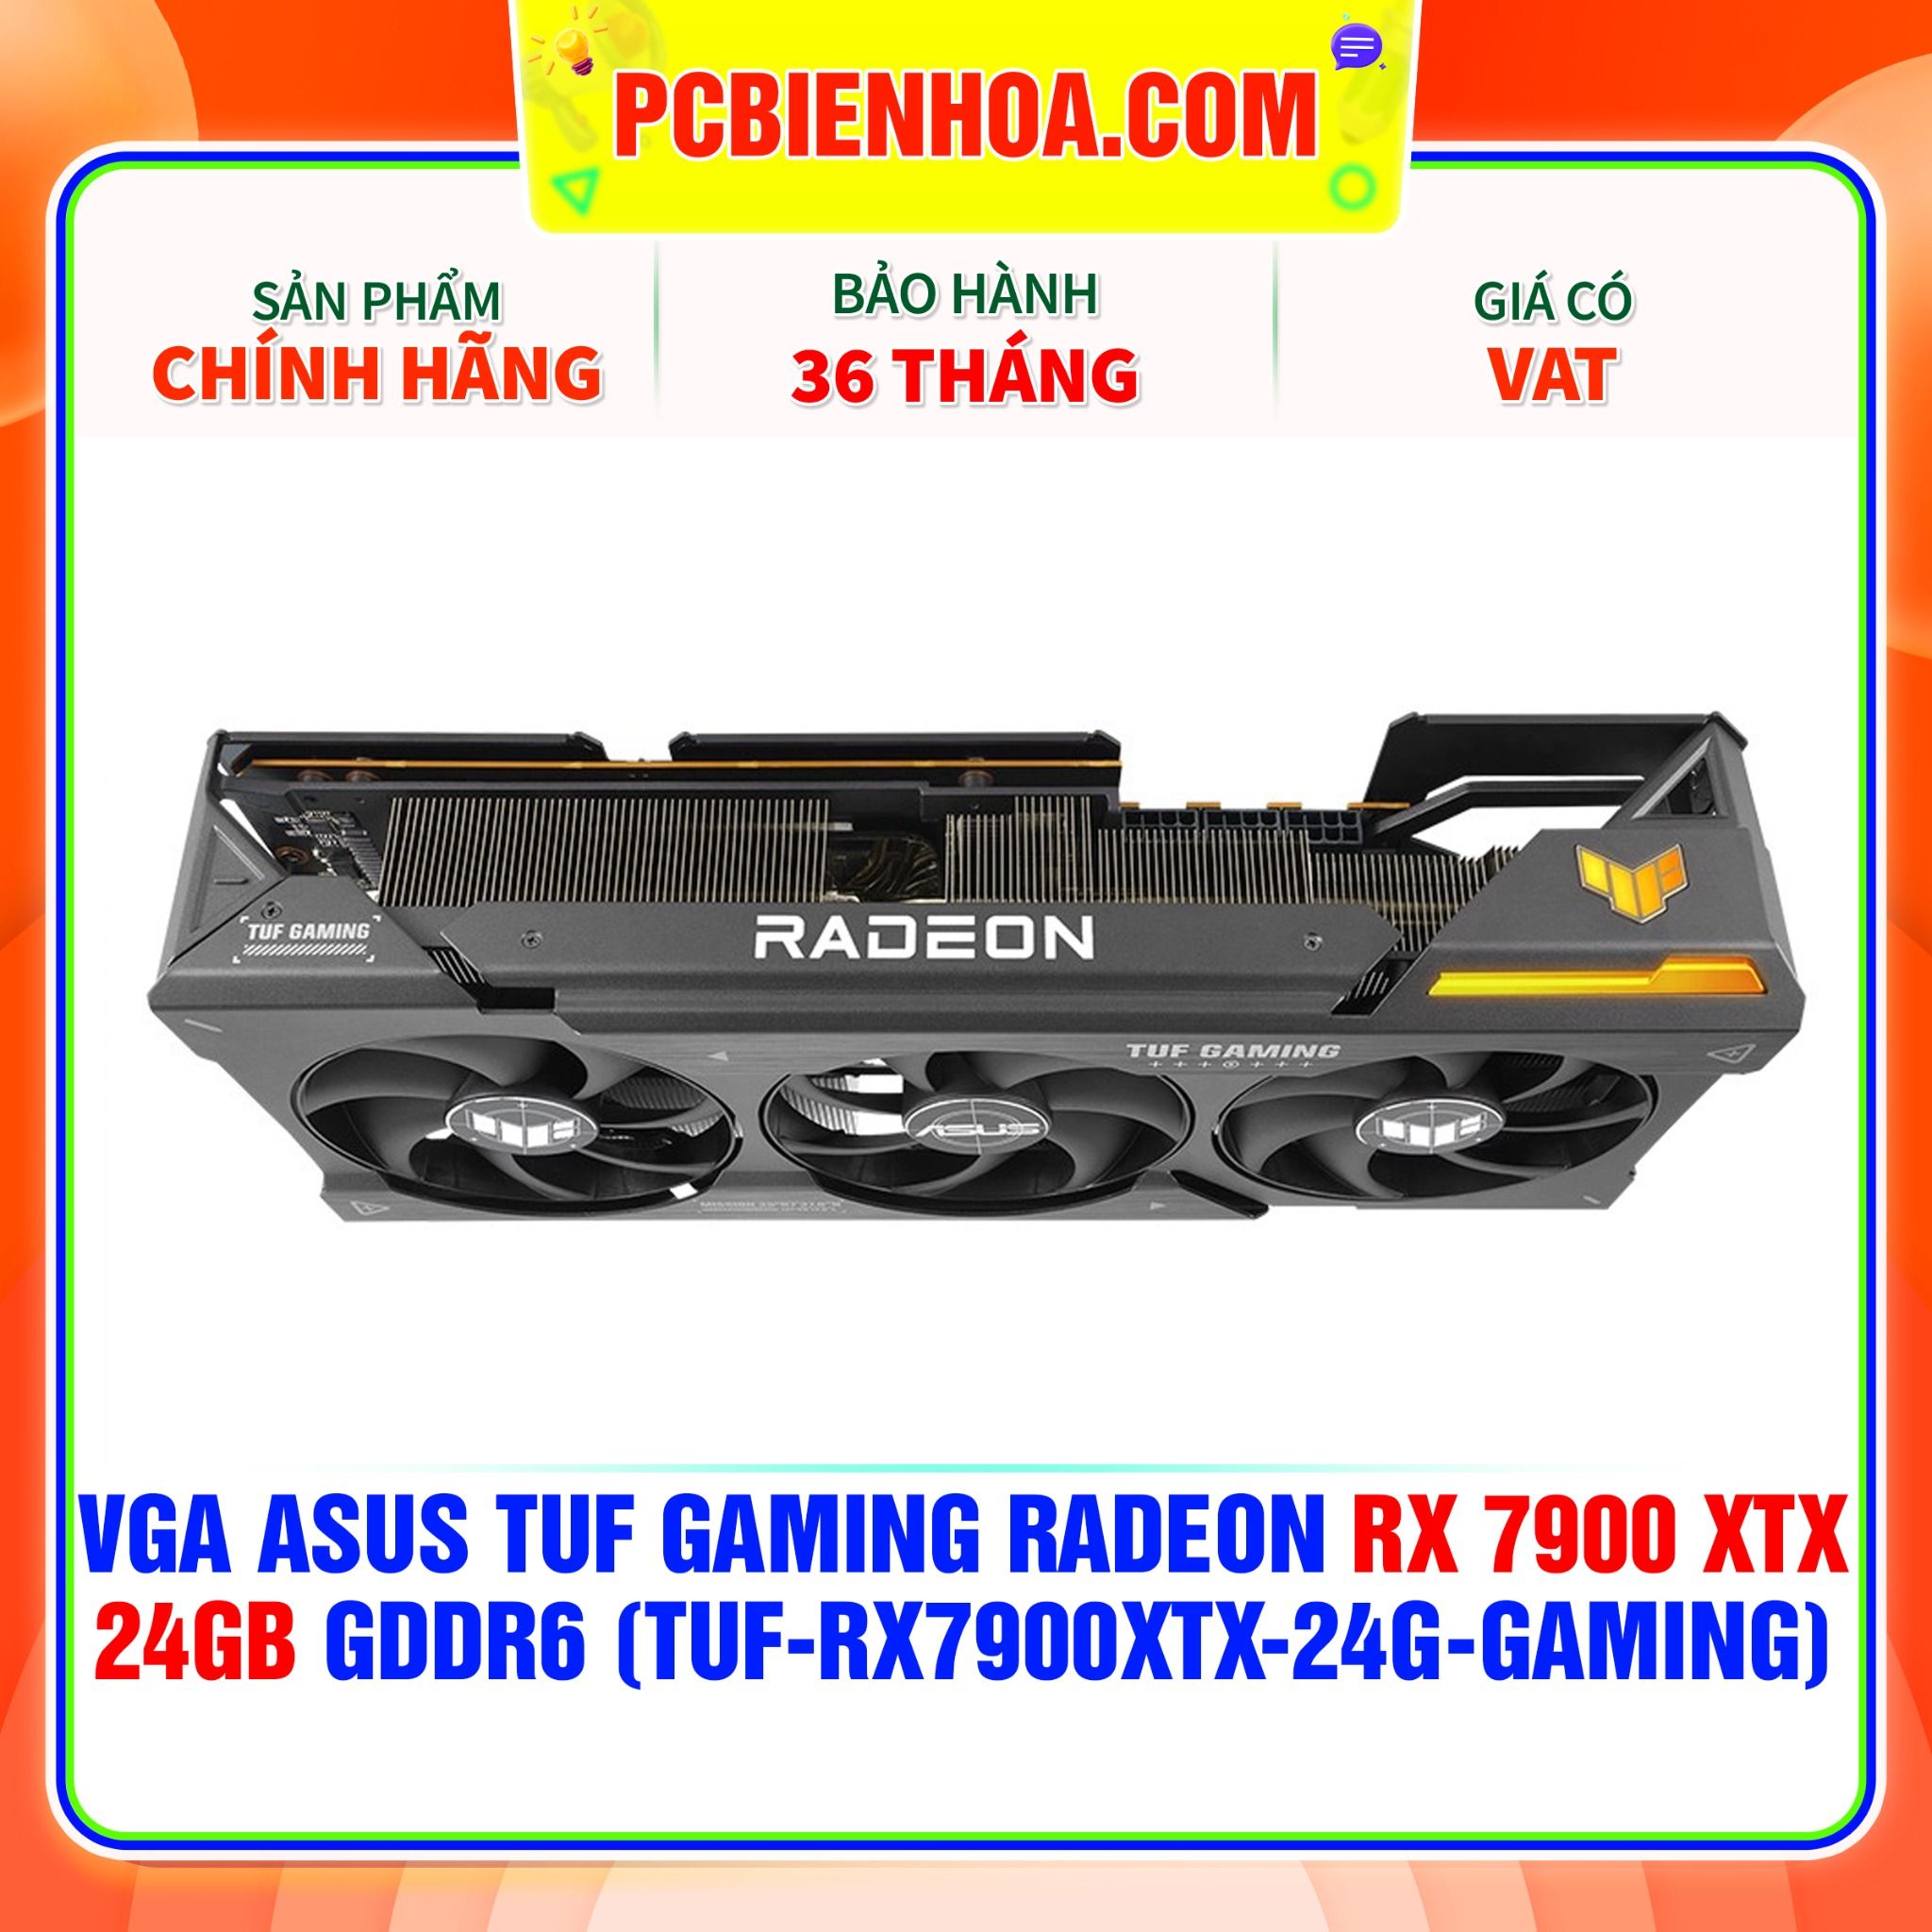  VGA ASUS TUF Gaming Radeon RX 7900 XTX 24GB GDDR6 (TUF-RX7900XTX-24G-GAMING) 